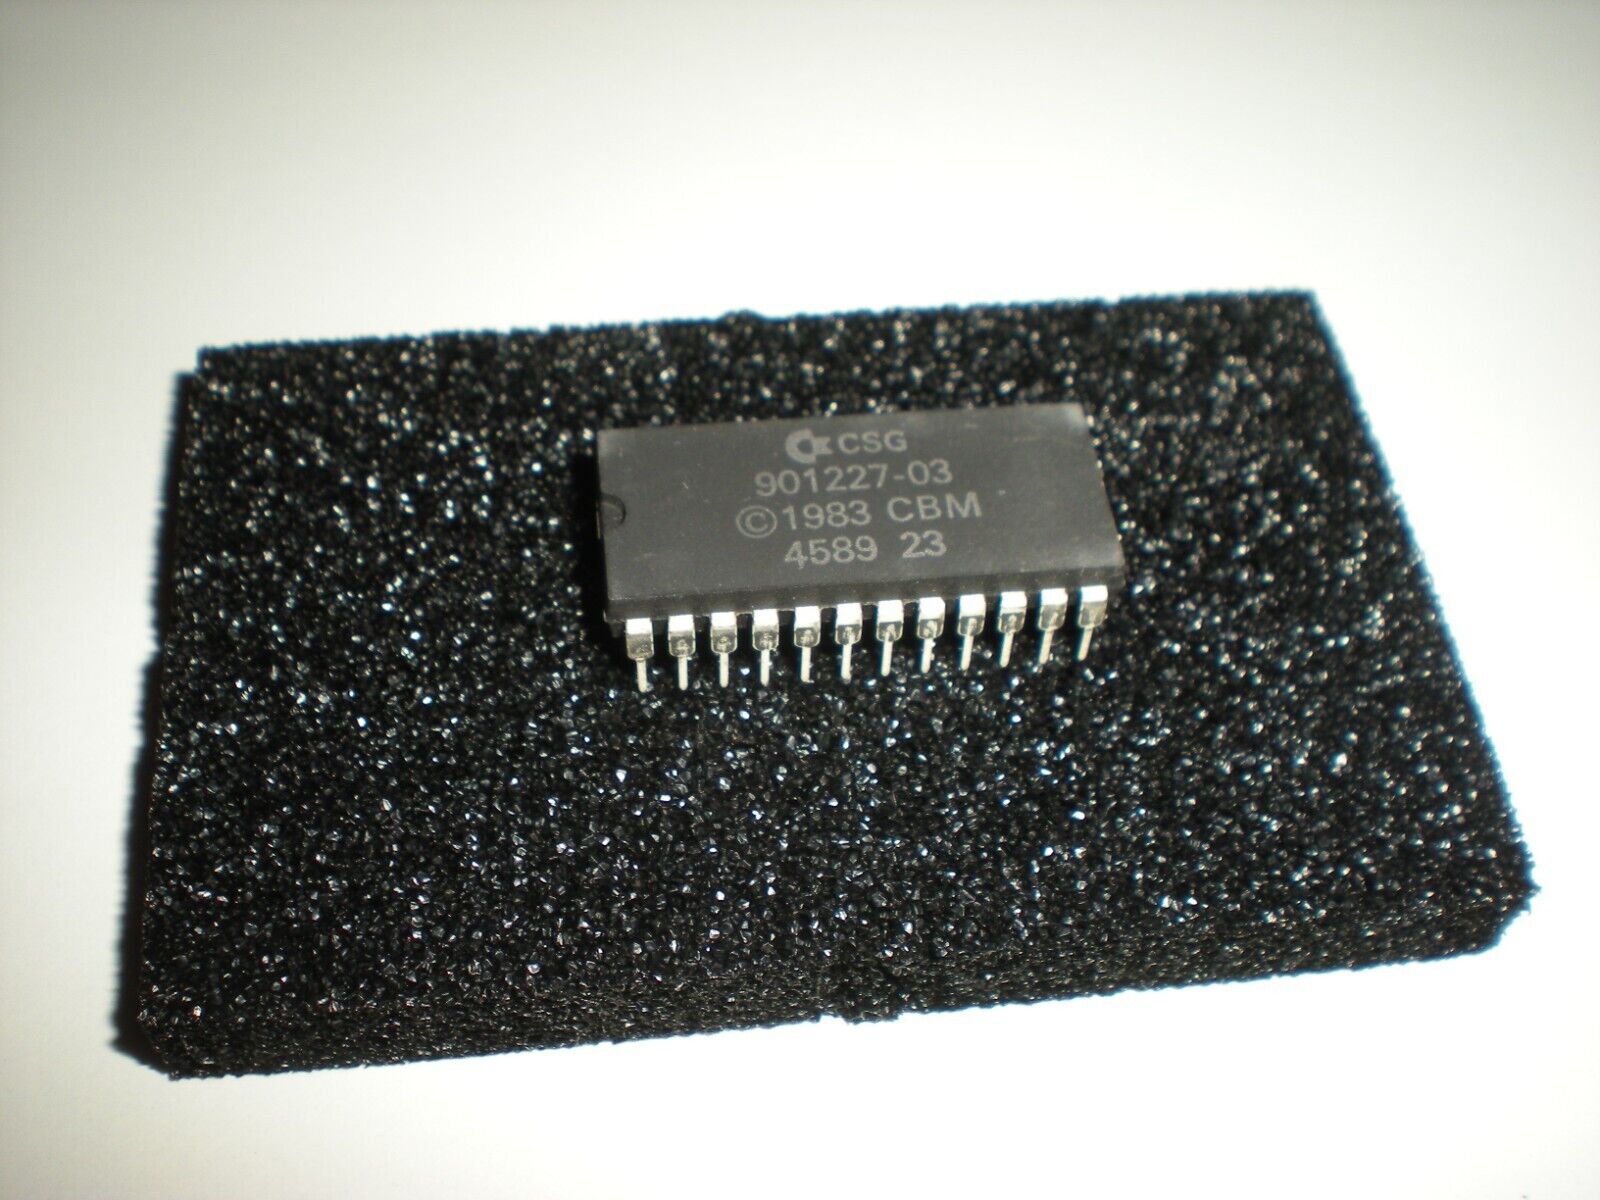 CSG & CBM Commodore 64 kernal rom IC chip 901227-03 similar to MOS